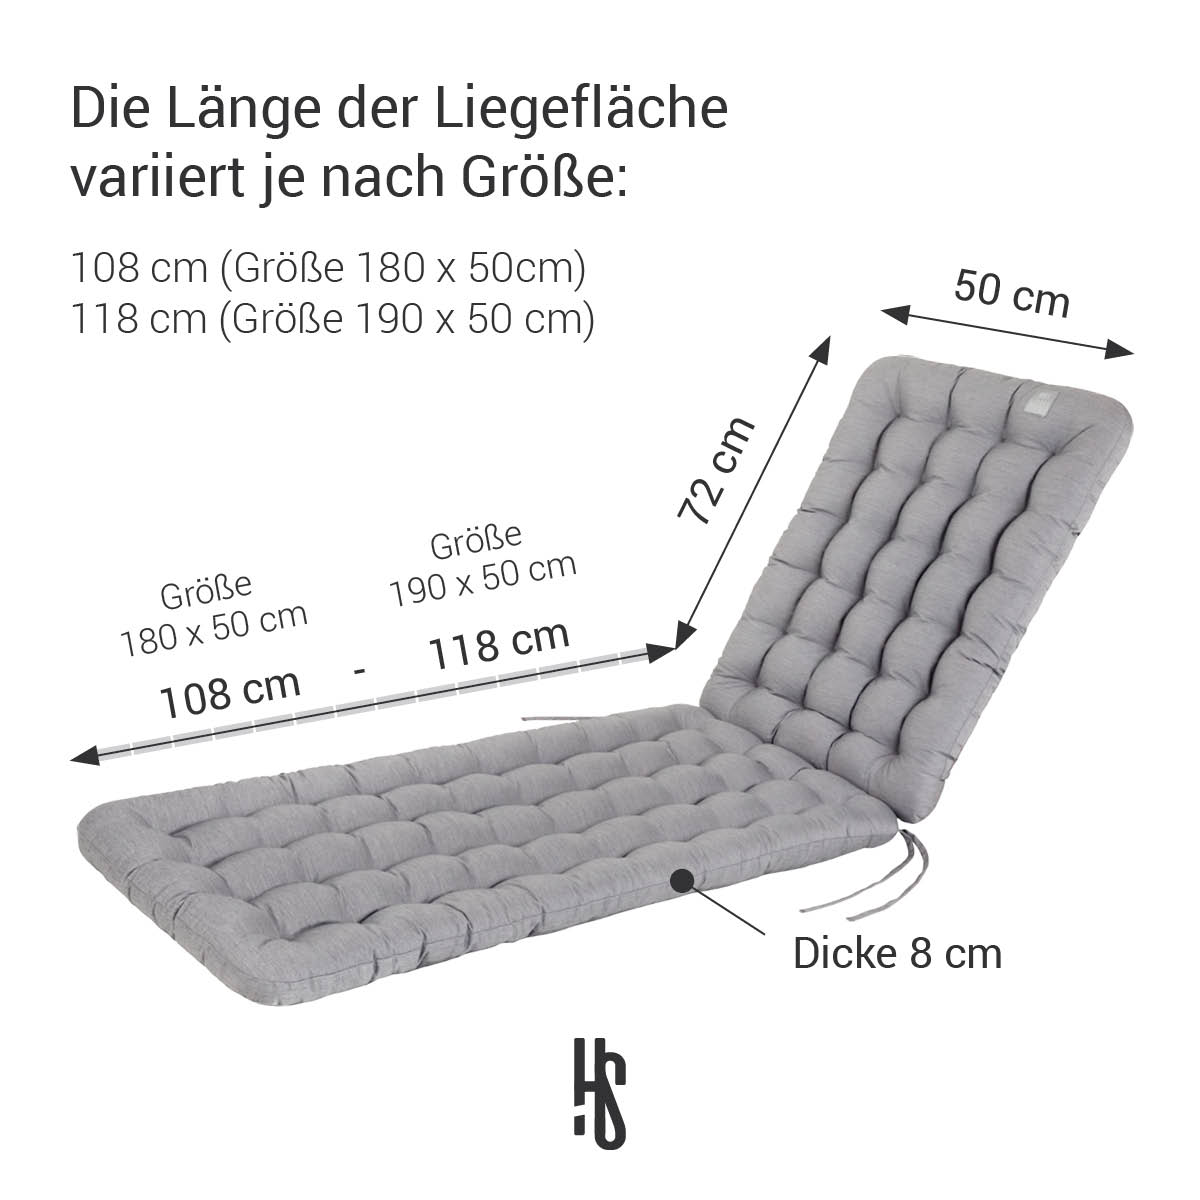 Deckchair Auflage Hellgrau in 180x50 cm / 190x50 cm, Polsterung 8 cm Dick mit Rückenteil 72 cm lang | orthopädische Liegefläche | HAVE A SEAT Living